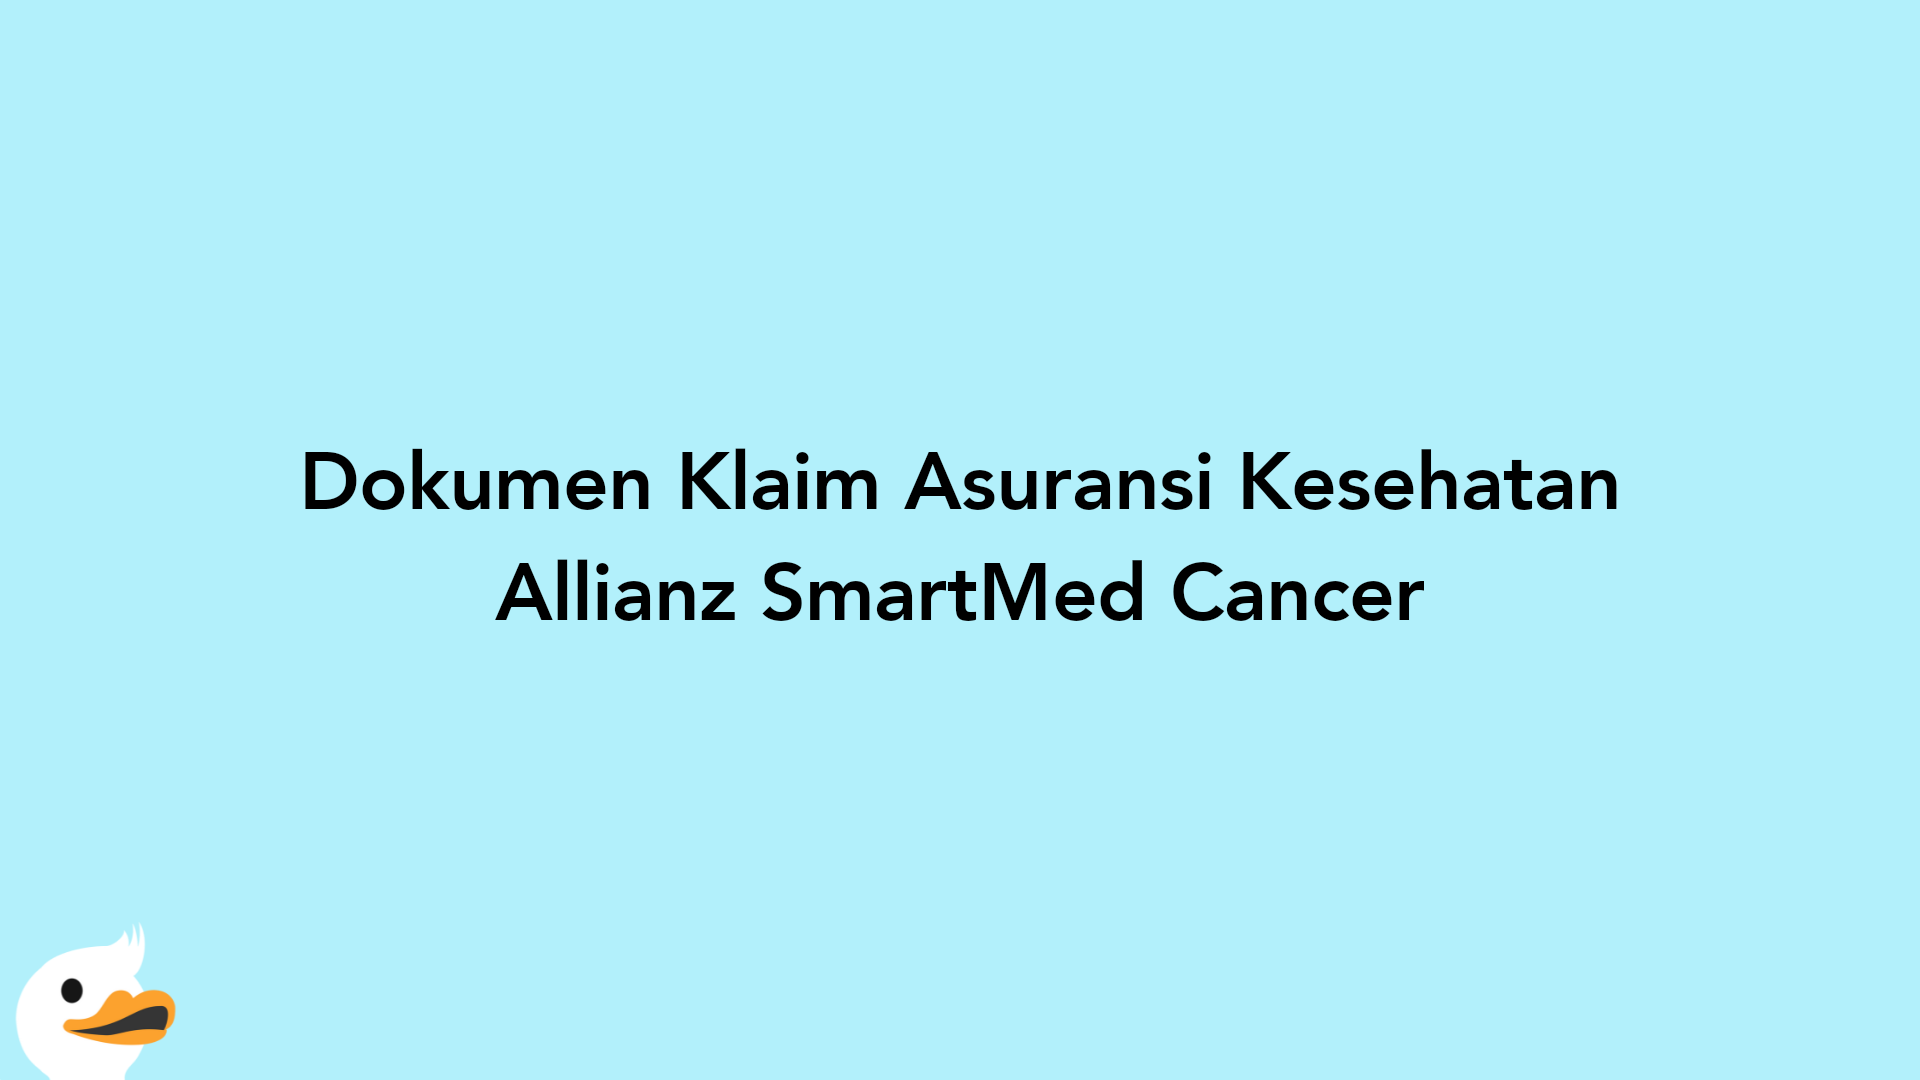 Dokumen Klaim Asuransi Kesehatan Allianz SmartMed Cancer